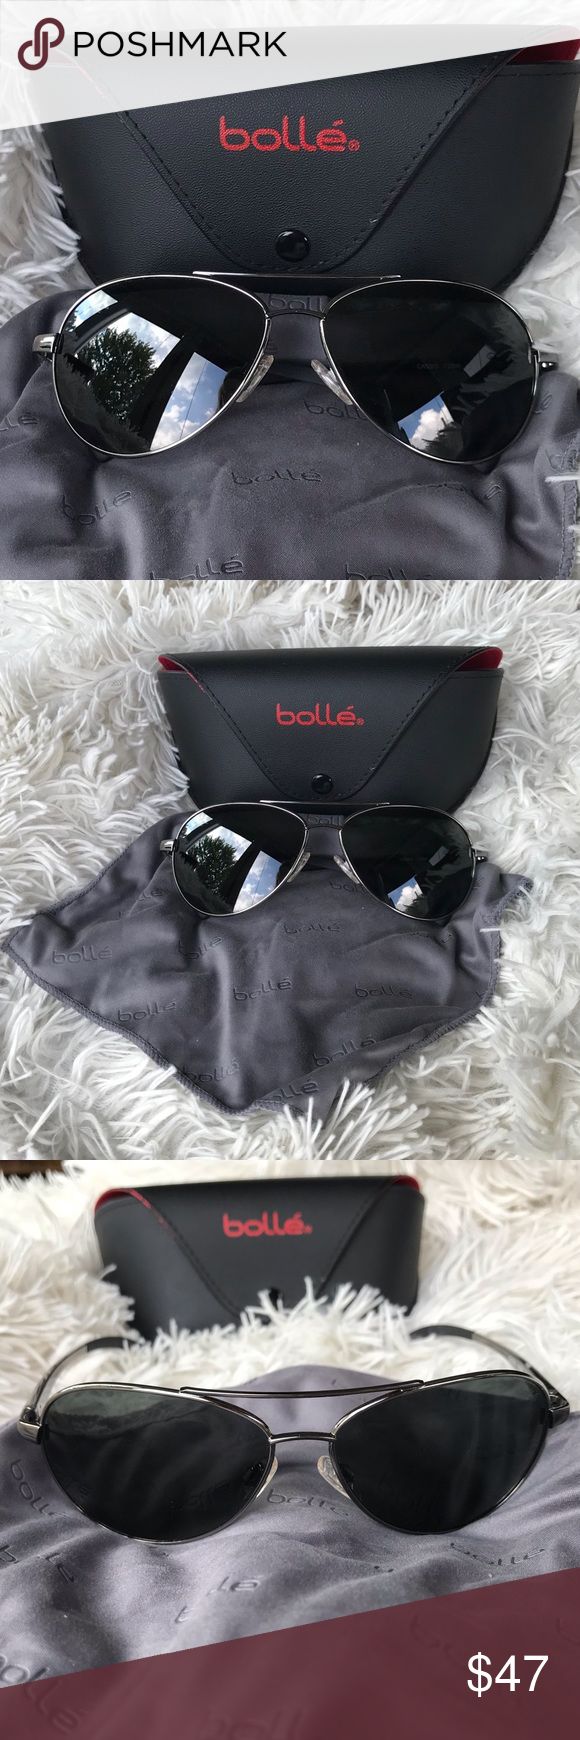 Bollé Cassis sunglasses Bollé Cassis black sunglasses. Corporate gift. Never w...